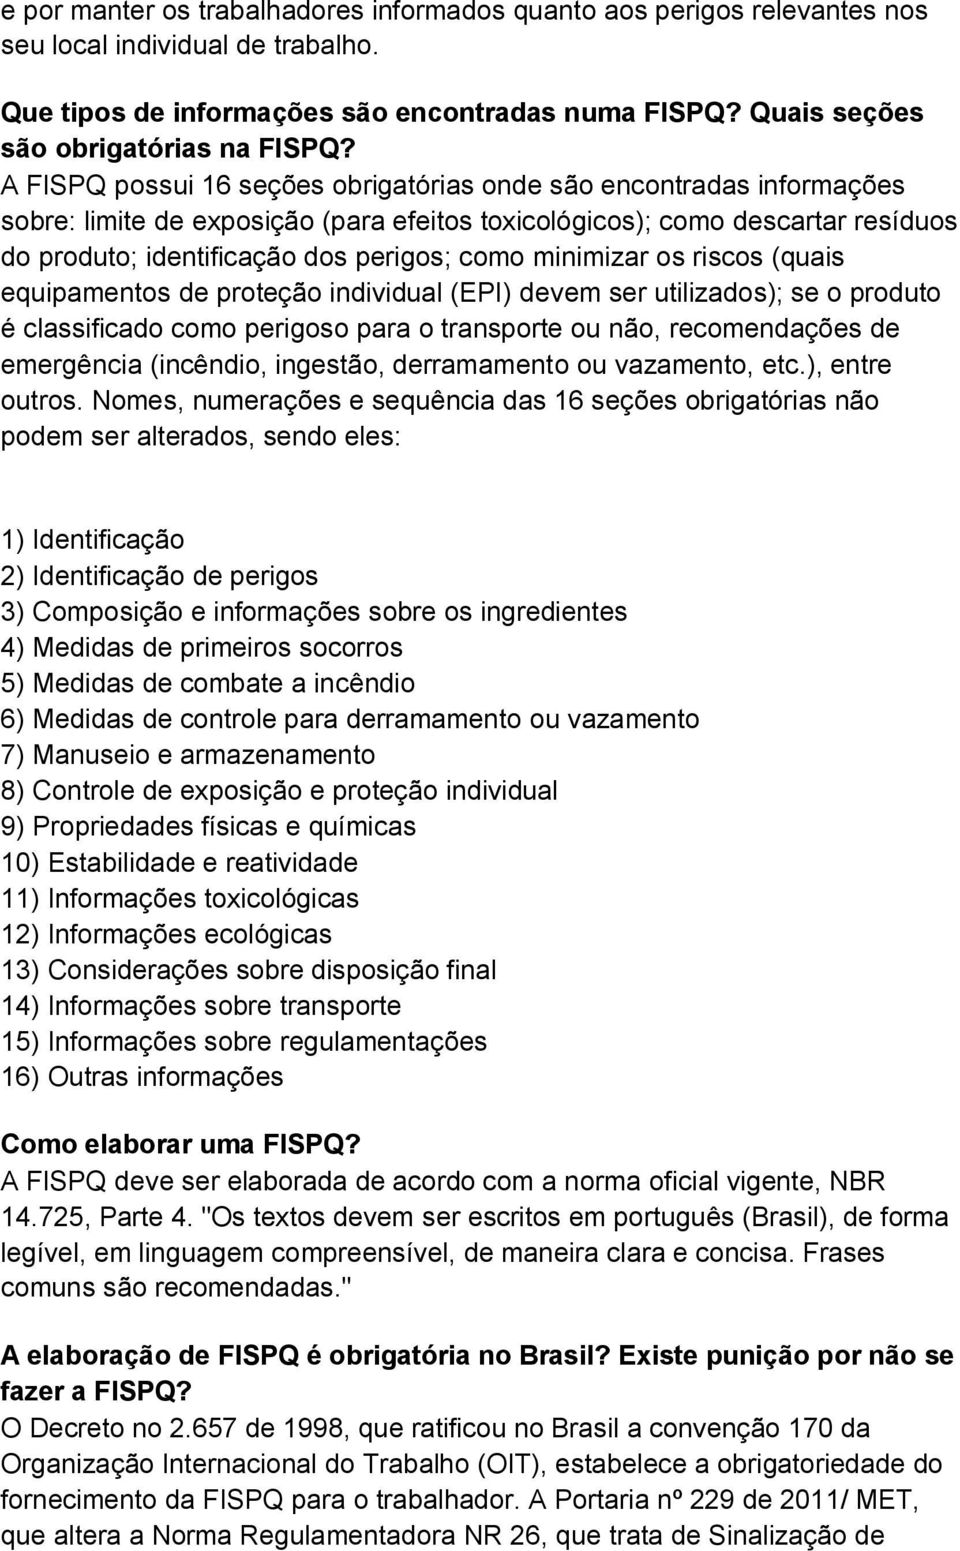 A FISPQ possui 16 seções obrigatórias onde são encontradas informações sobre: limite de exposição (para efeitos toxicológicos); como descartar resíduos do produto; identificação dos perigos; como